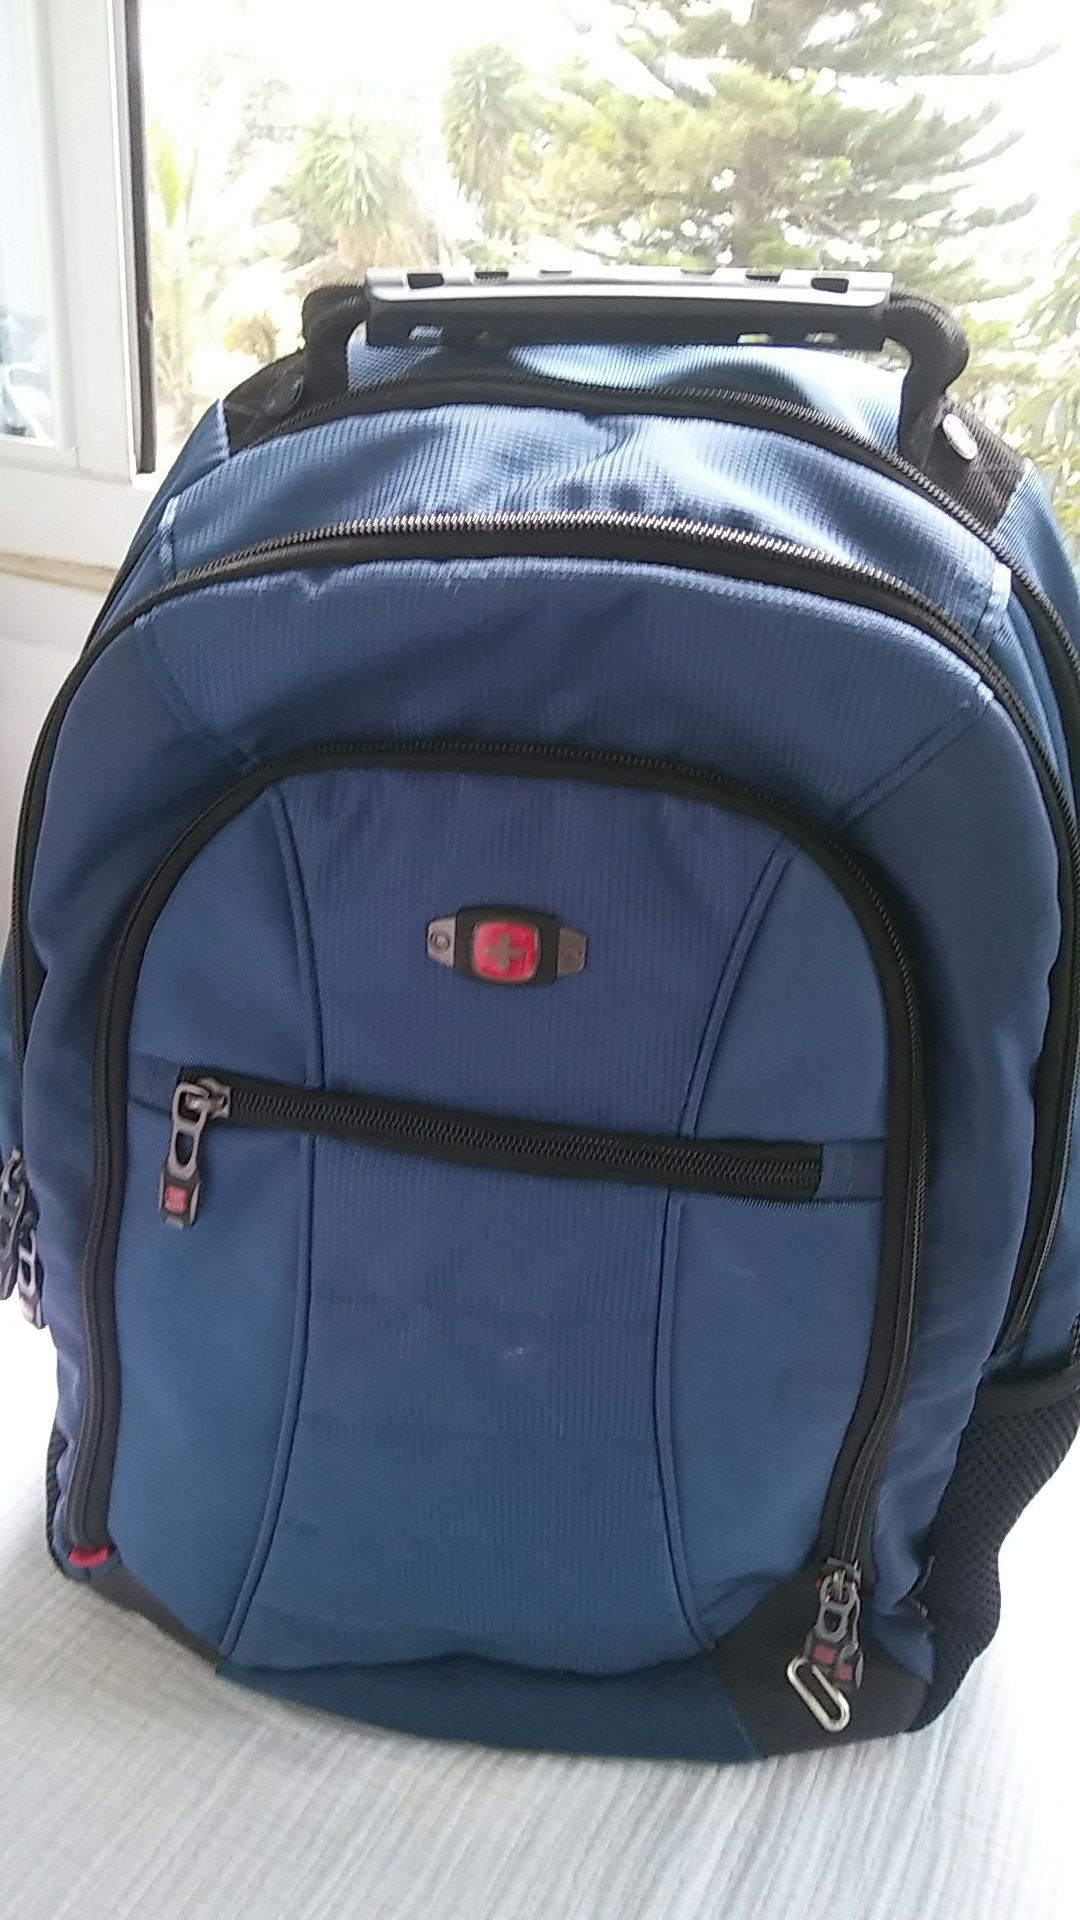 Swiss Gear backpack